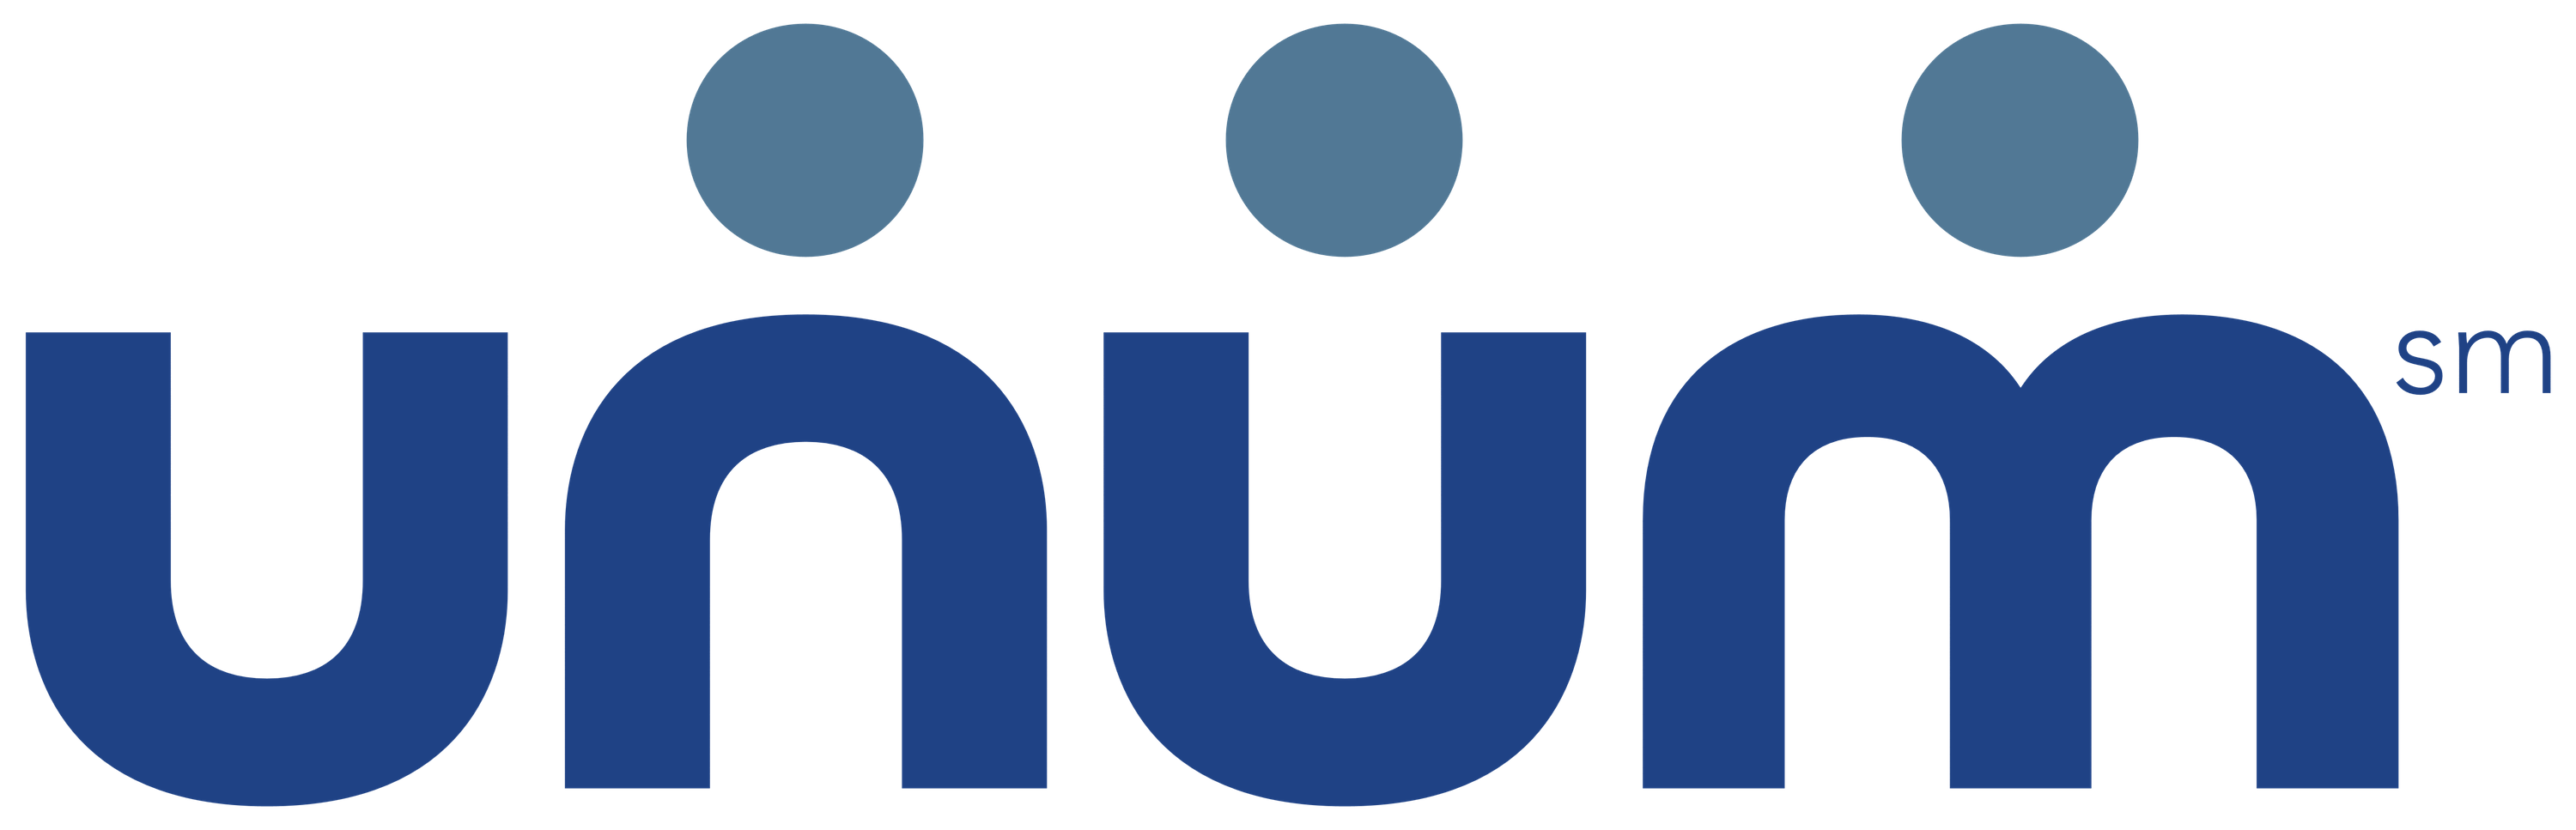 unum logo